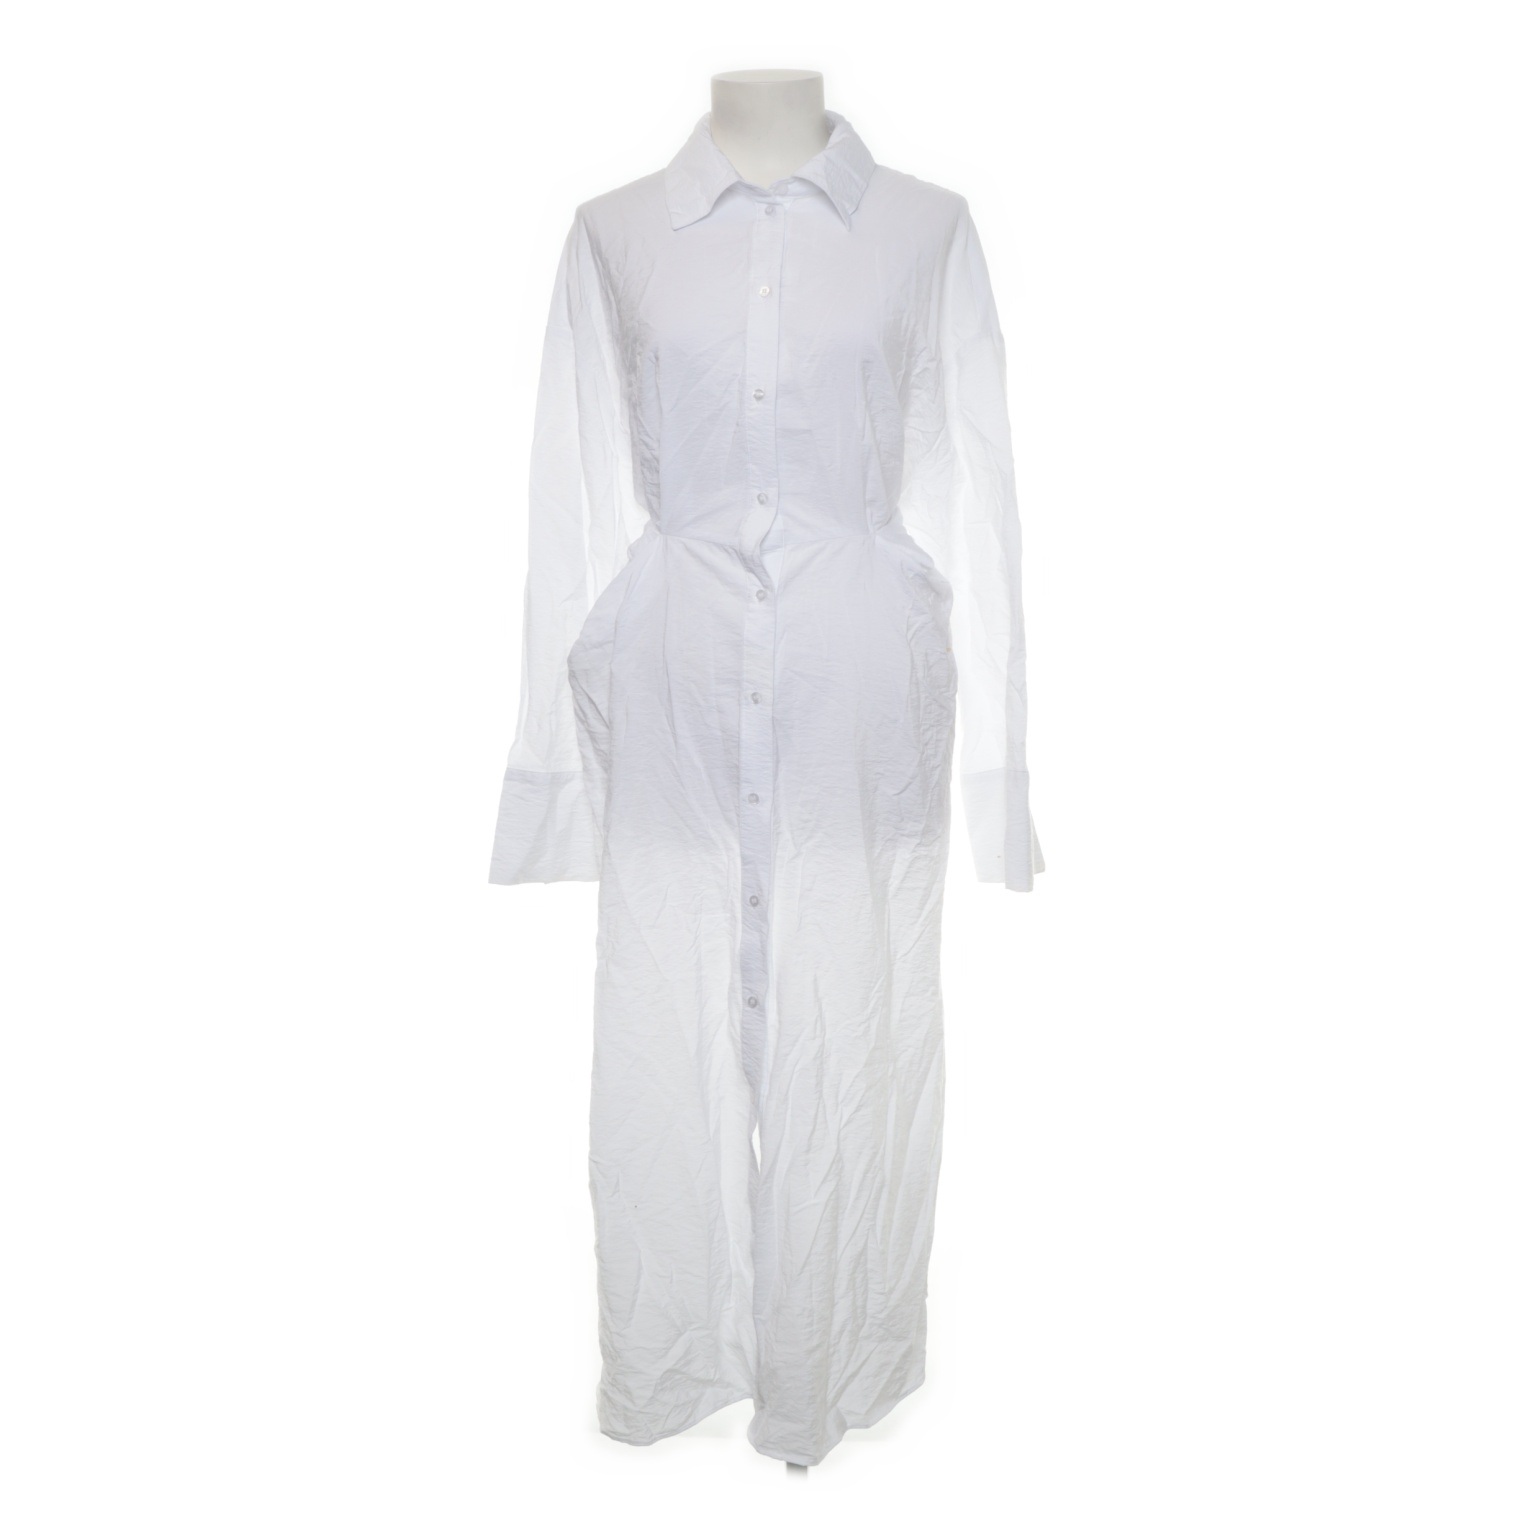 H&M - Blusenkleid - Größe: L - Weiß von H&M